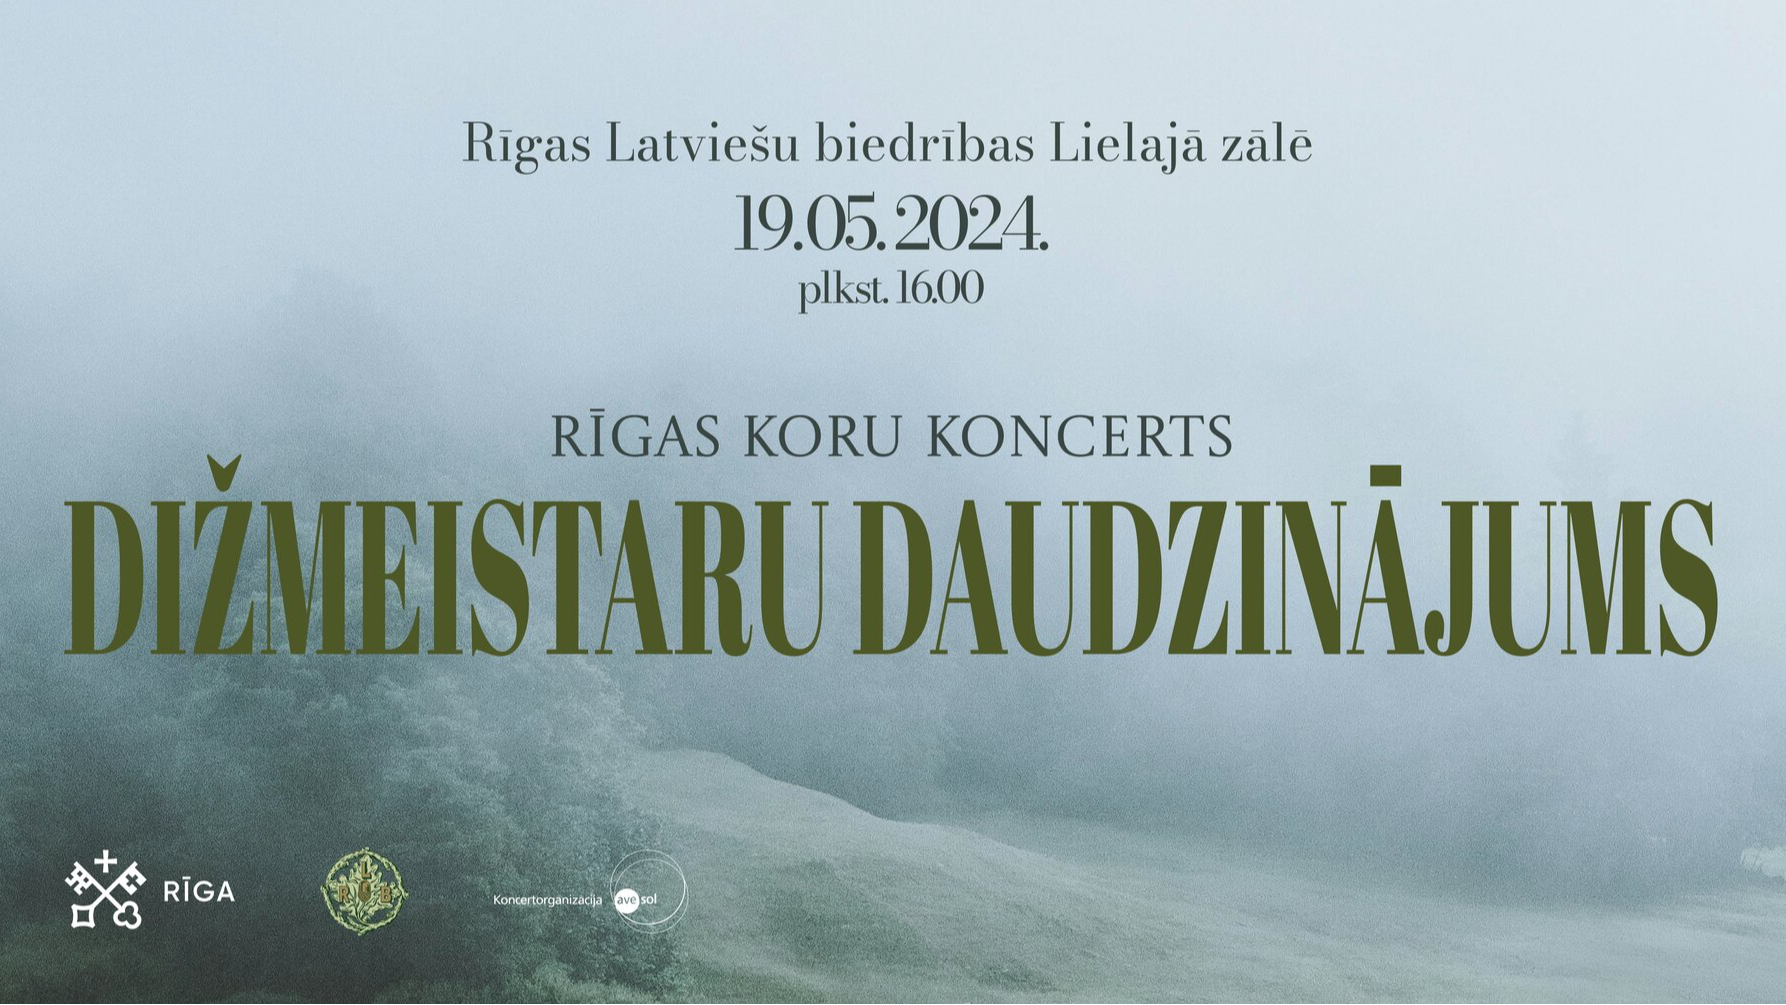 Rīgas koru koncerts “Dižmeistaru daudzinājums”